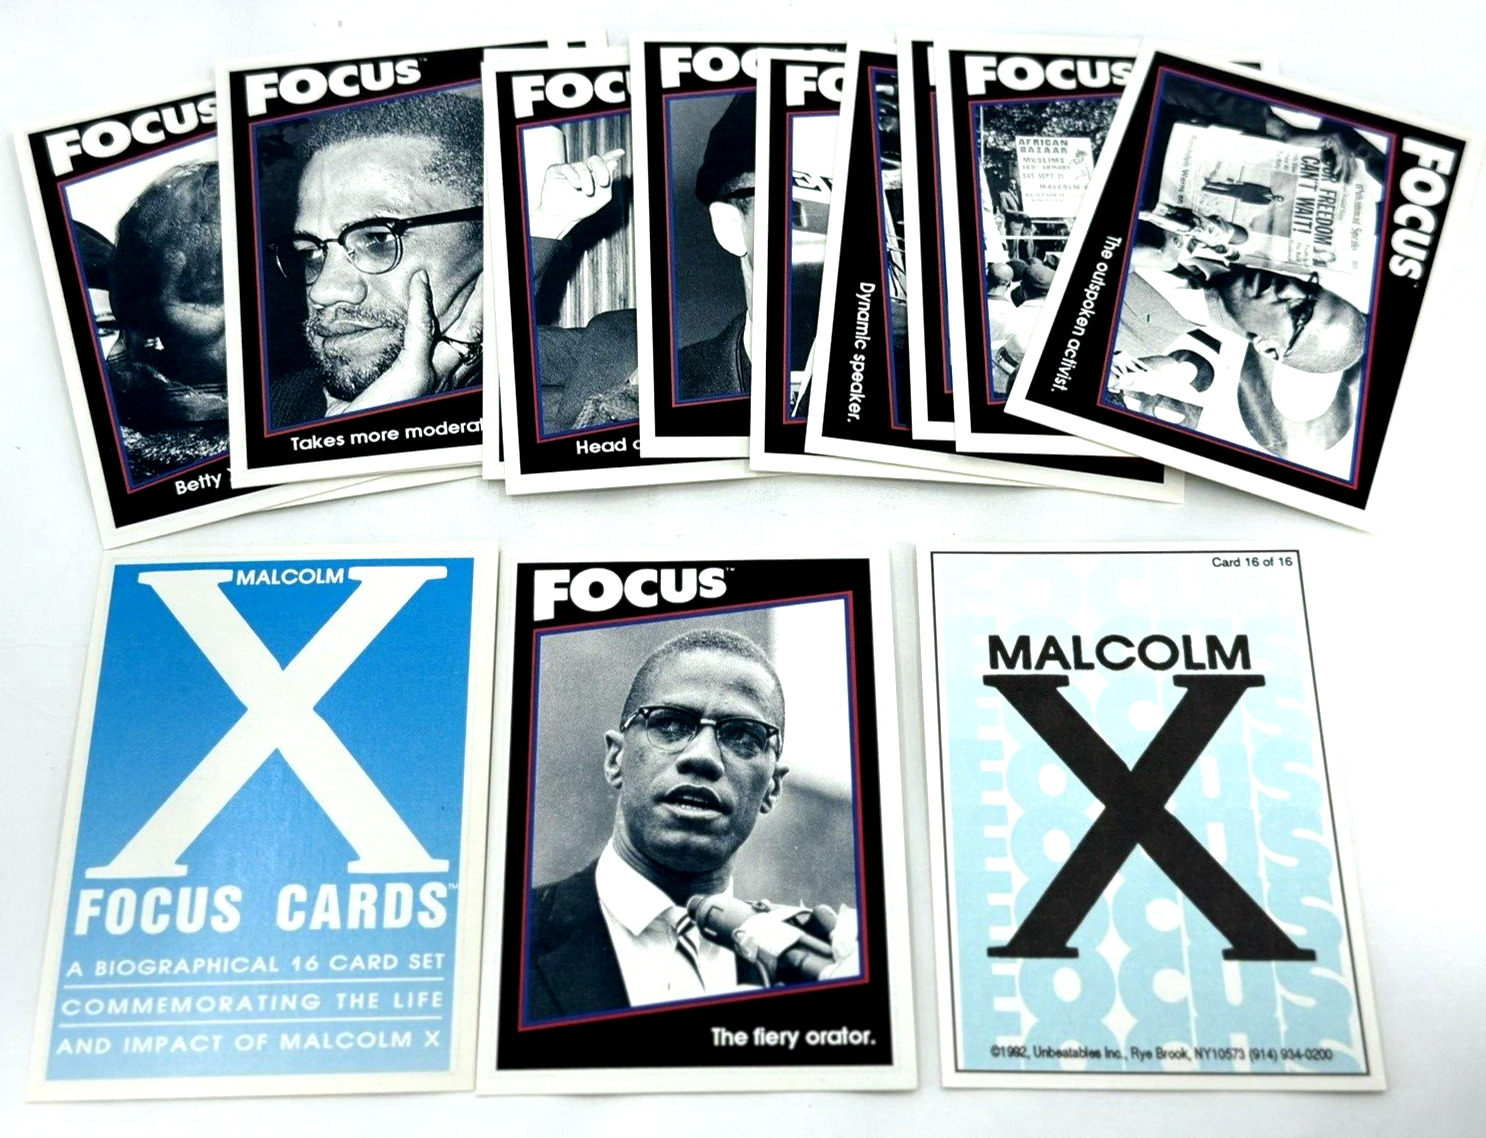 RARE 1992 Malcom X Focus Cards Biographical Complete 16 Card Set Unbeatables NM